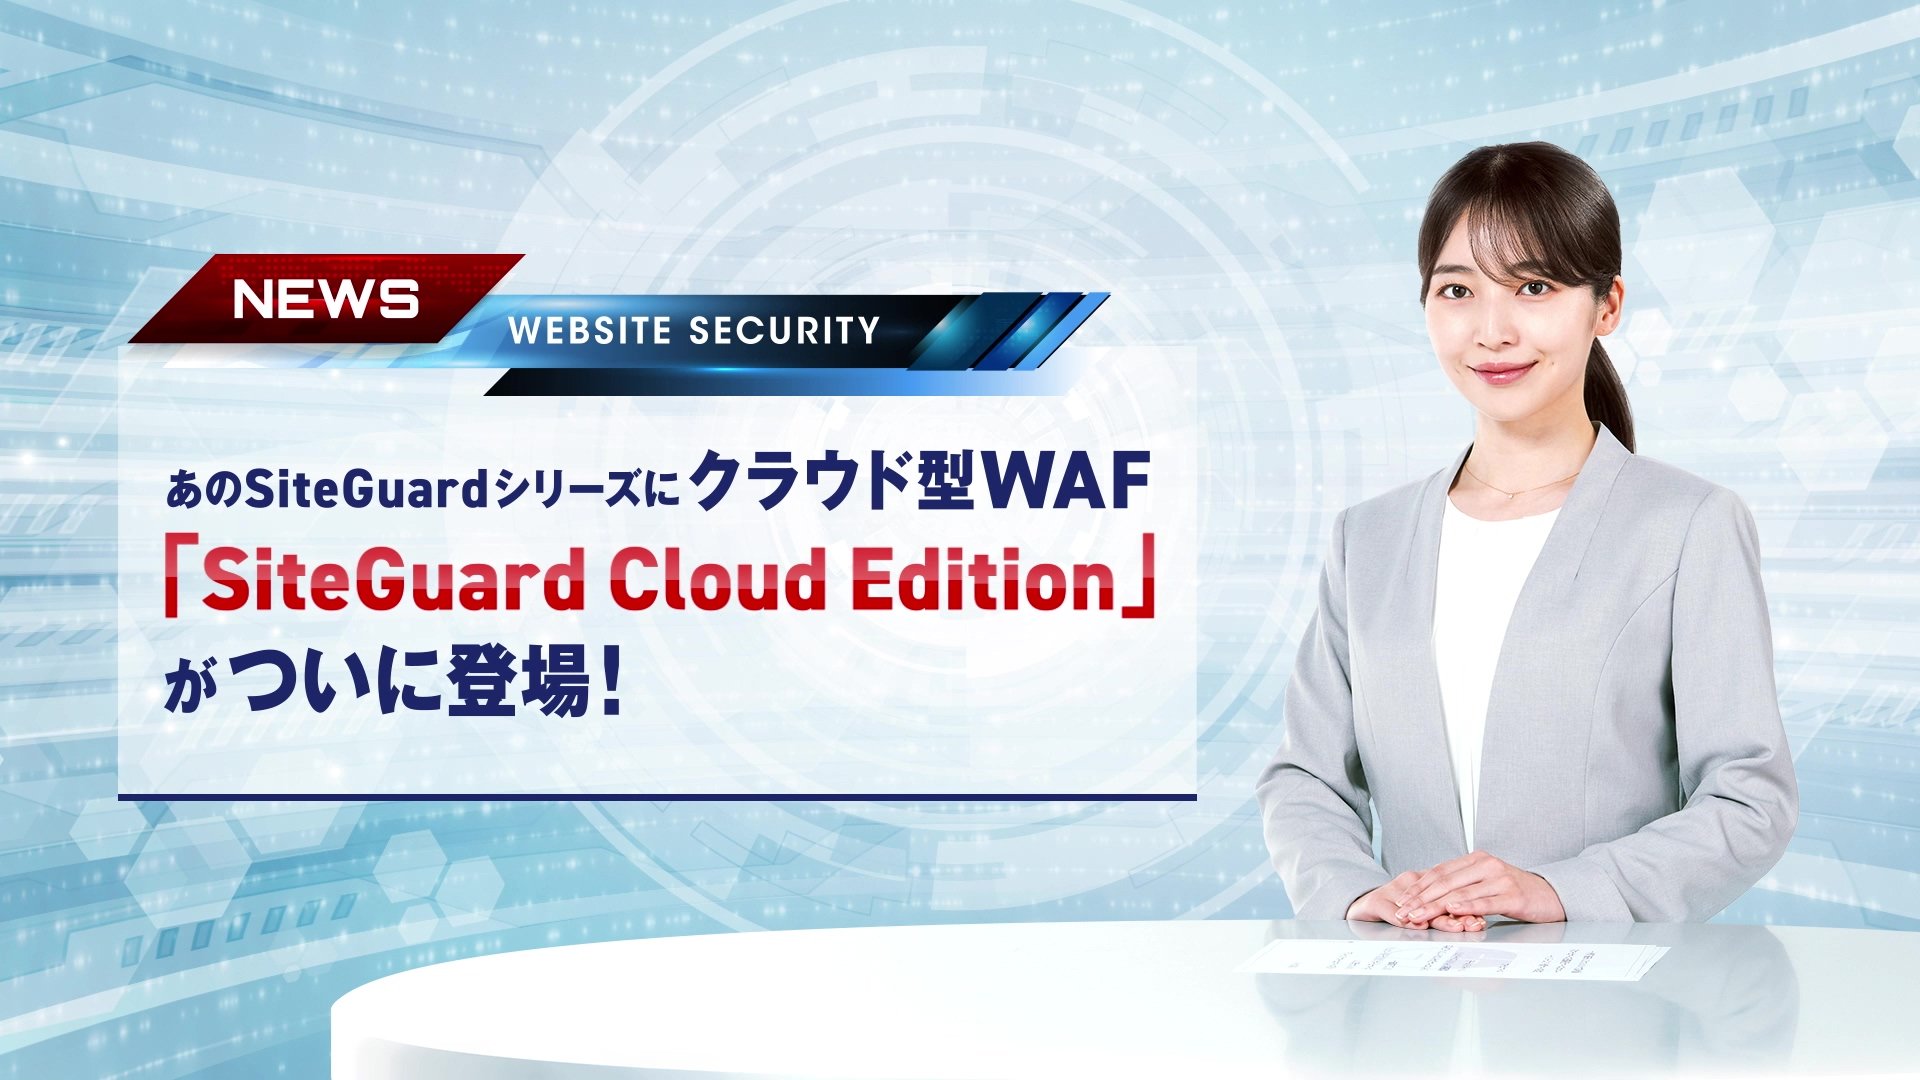 クラウド型WAF 「SiteGuard Cloud Edition」 